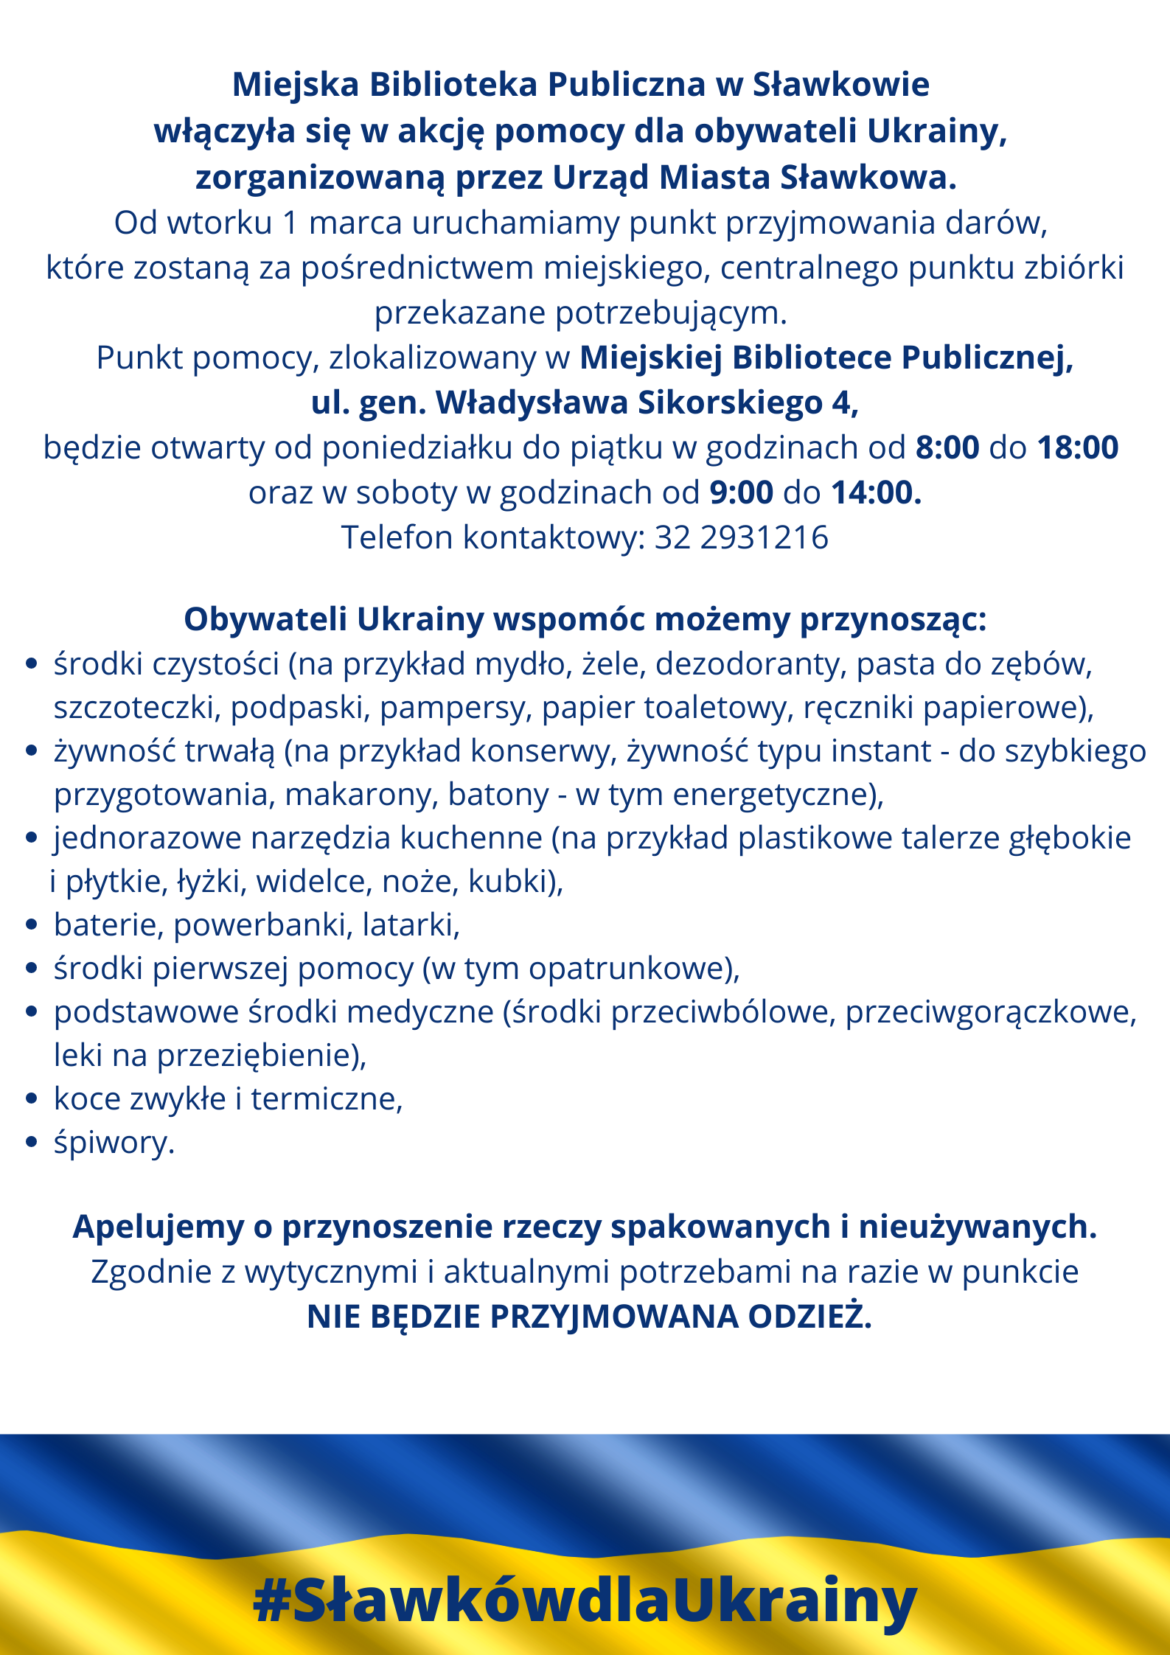 Sławkowska Biblioteka dla Ukrainy